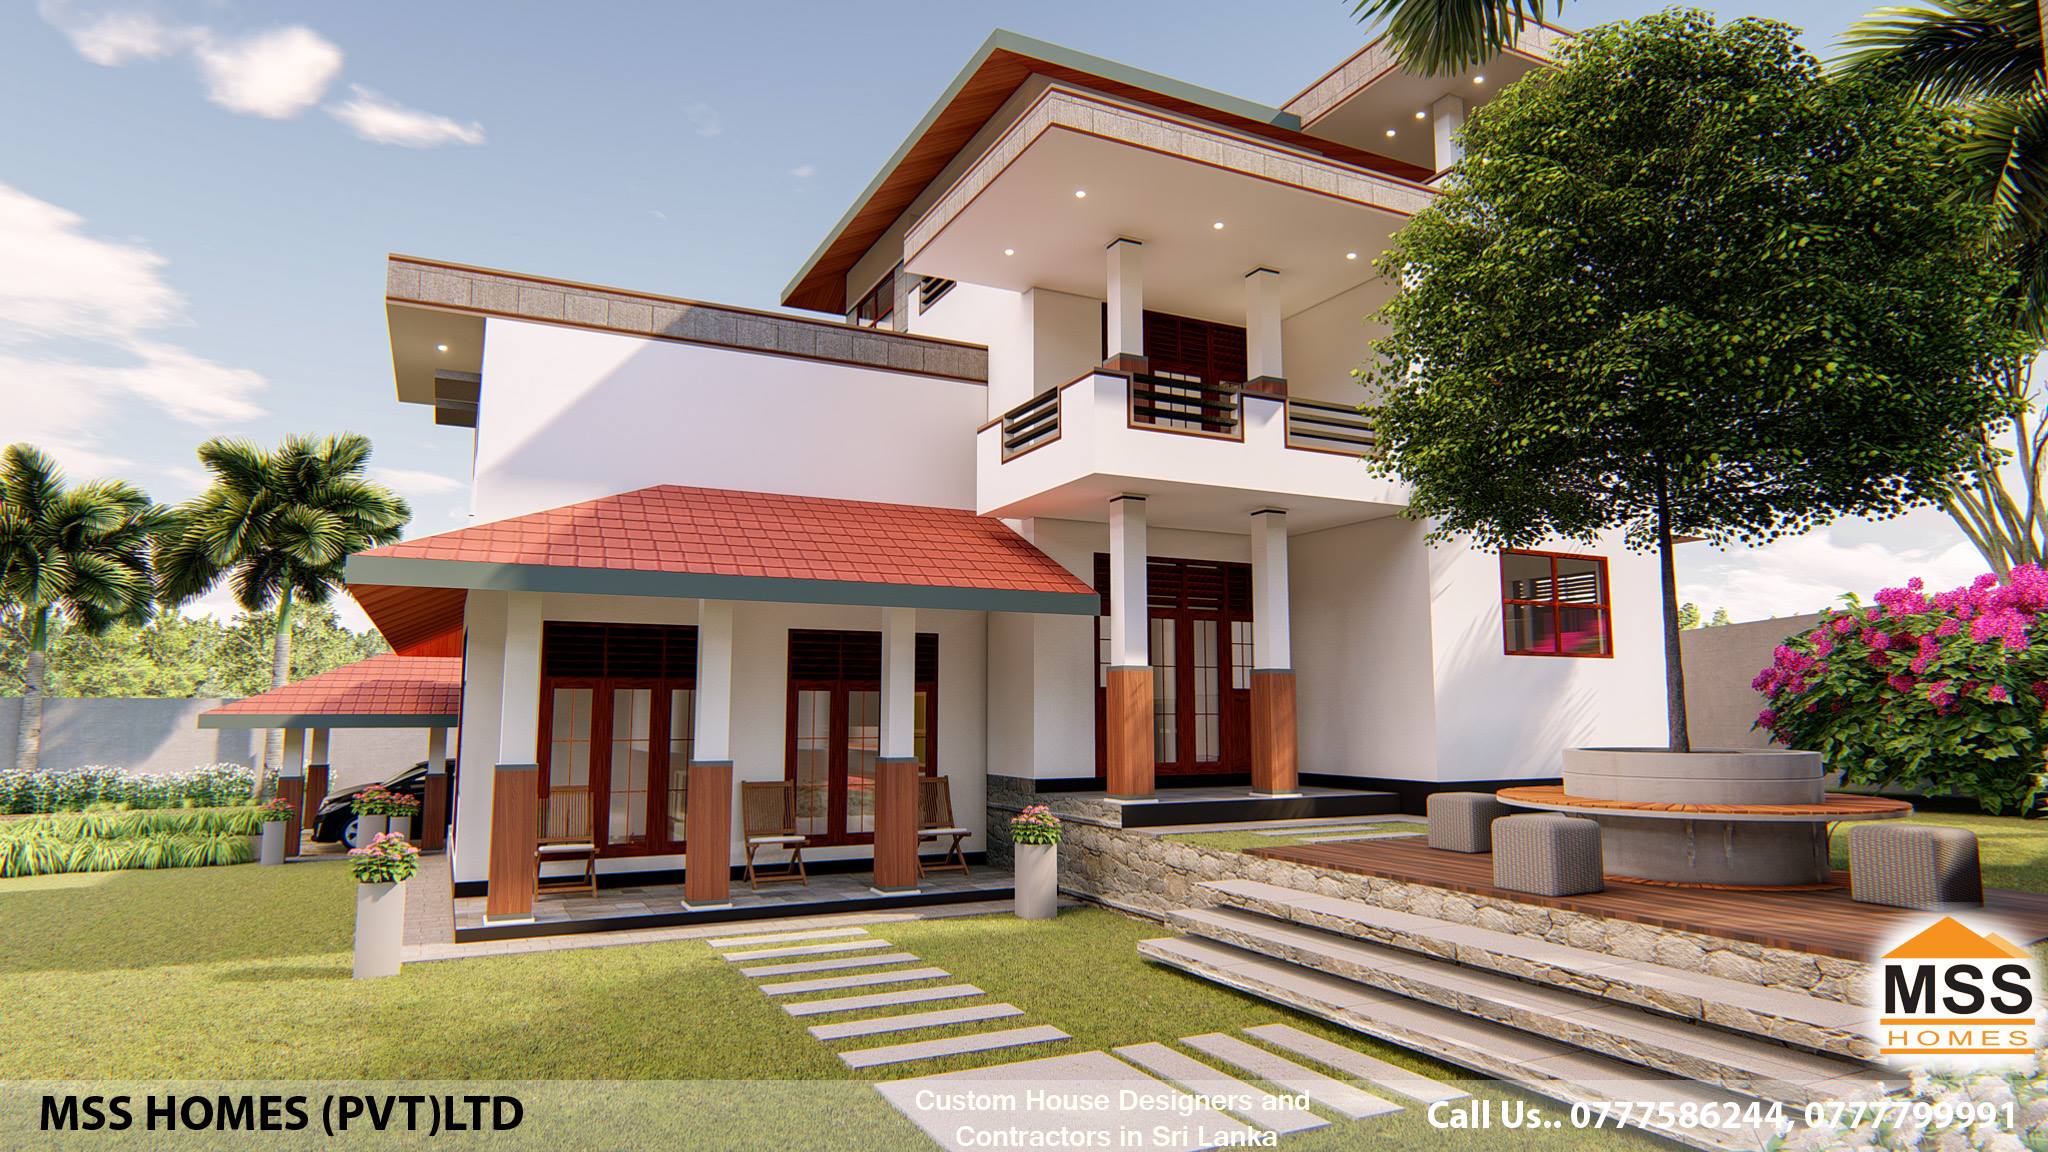 House Design Md523 House Builders In Sri Lanka Home